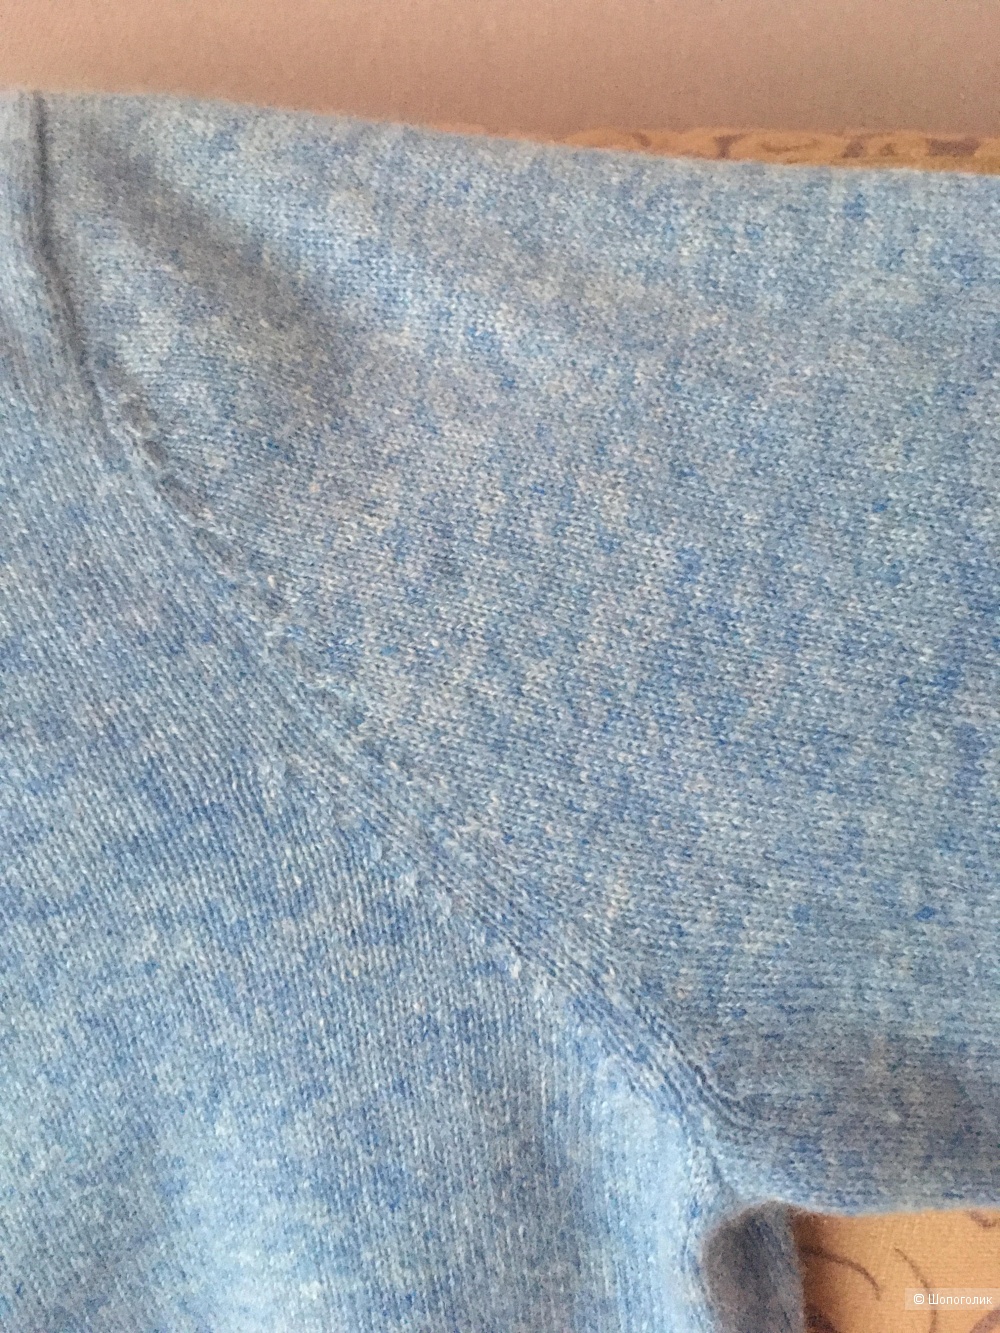 Кашемировый свитер джемпер Axiome размер 44